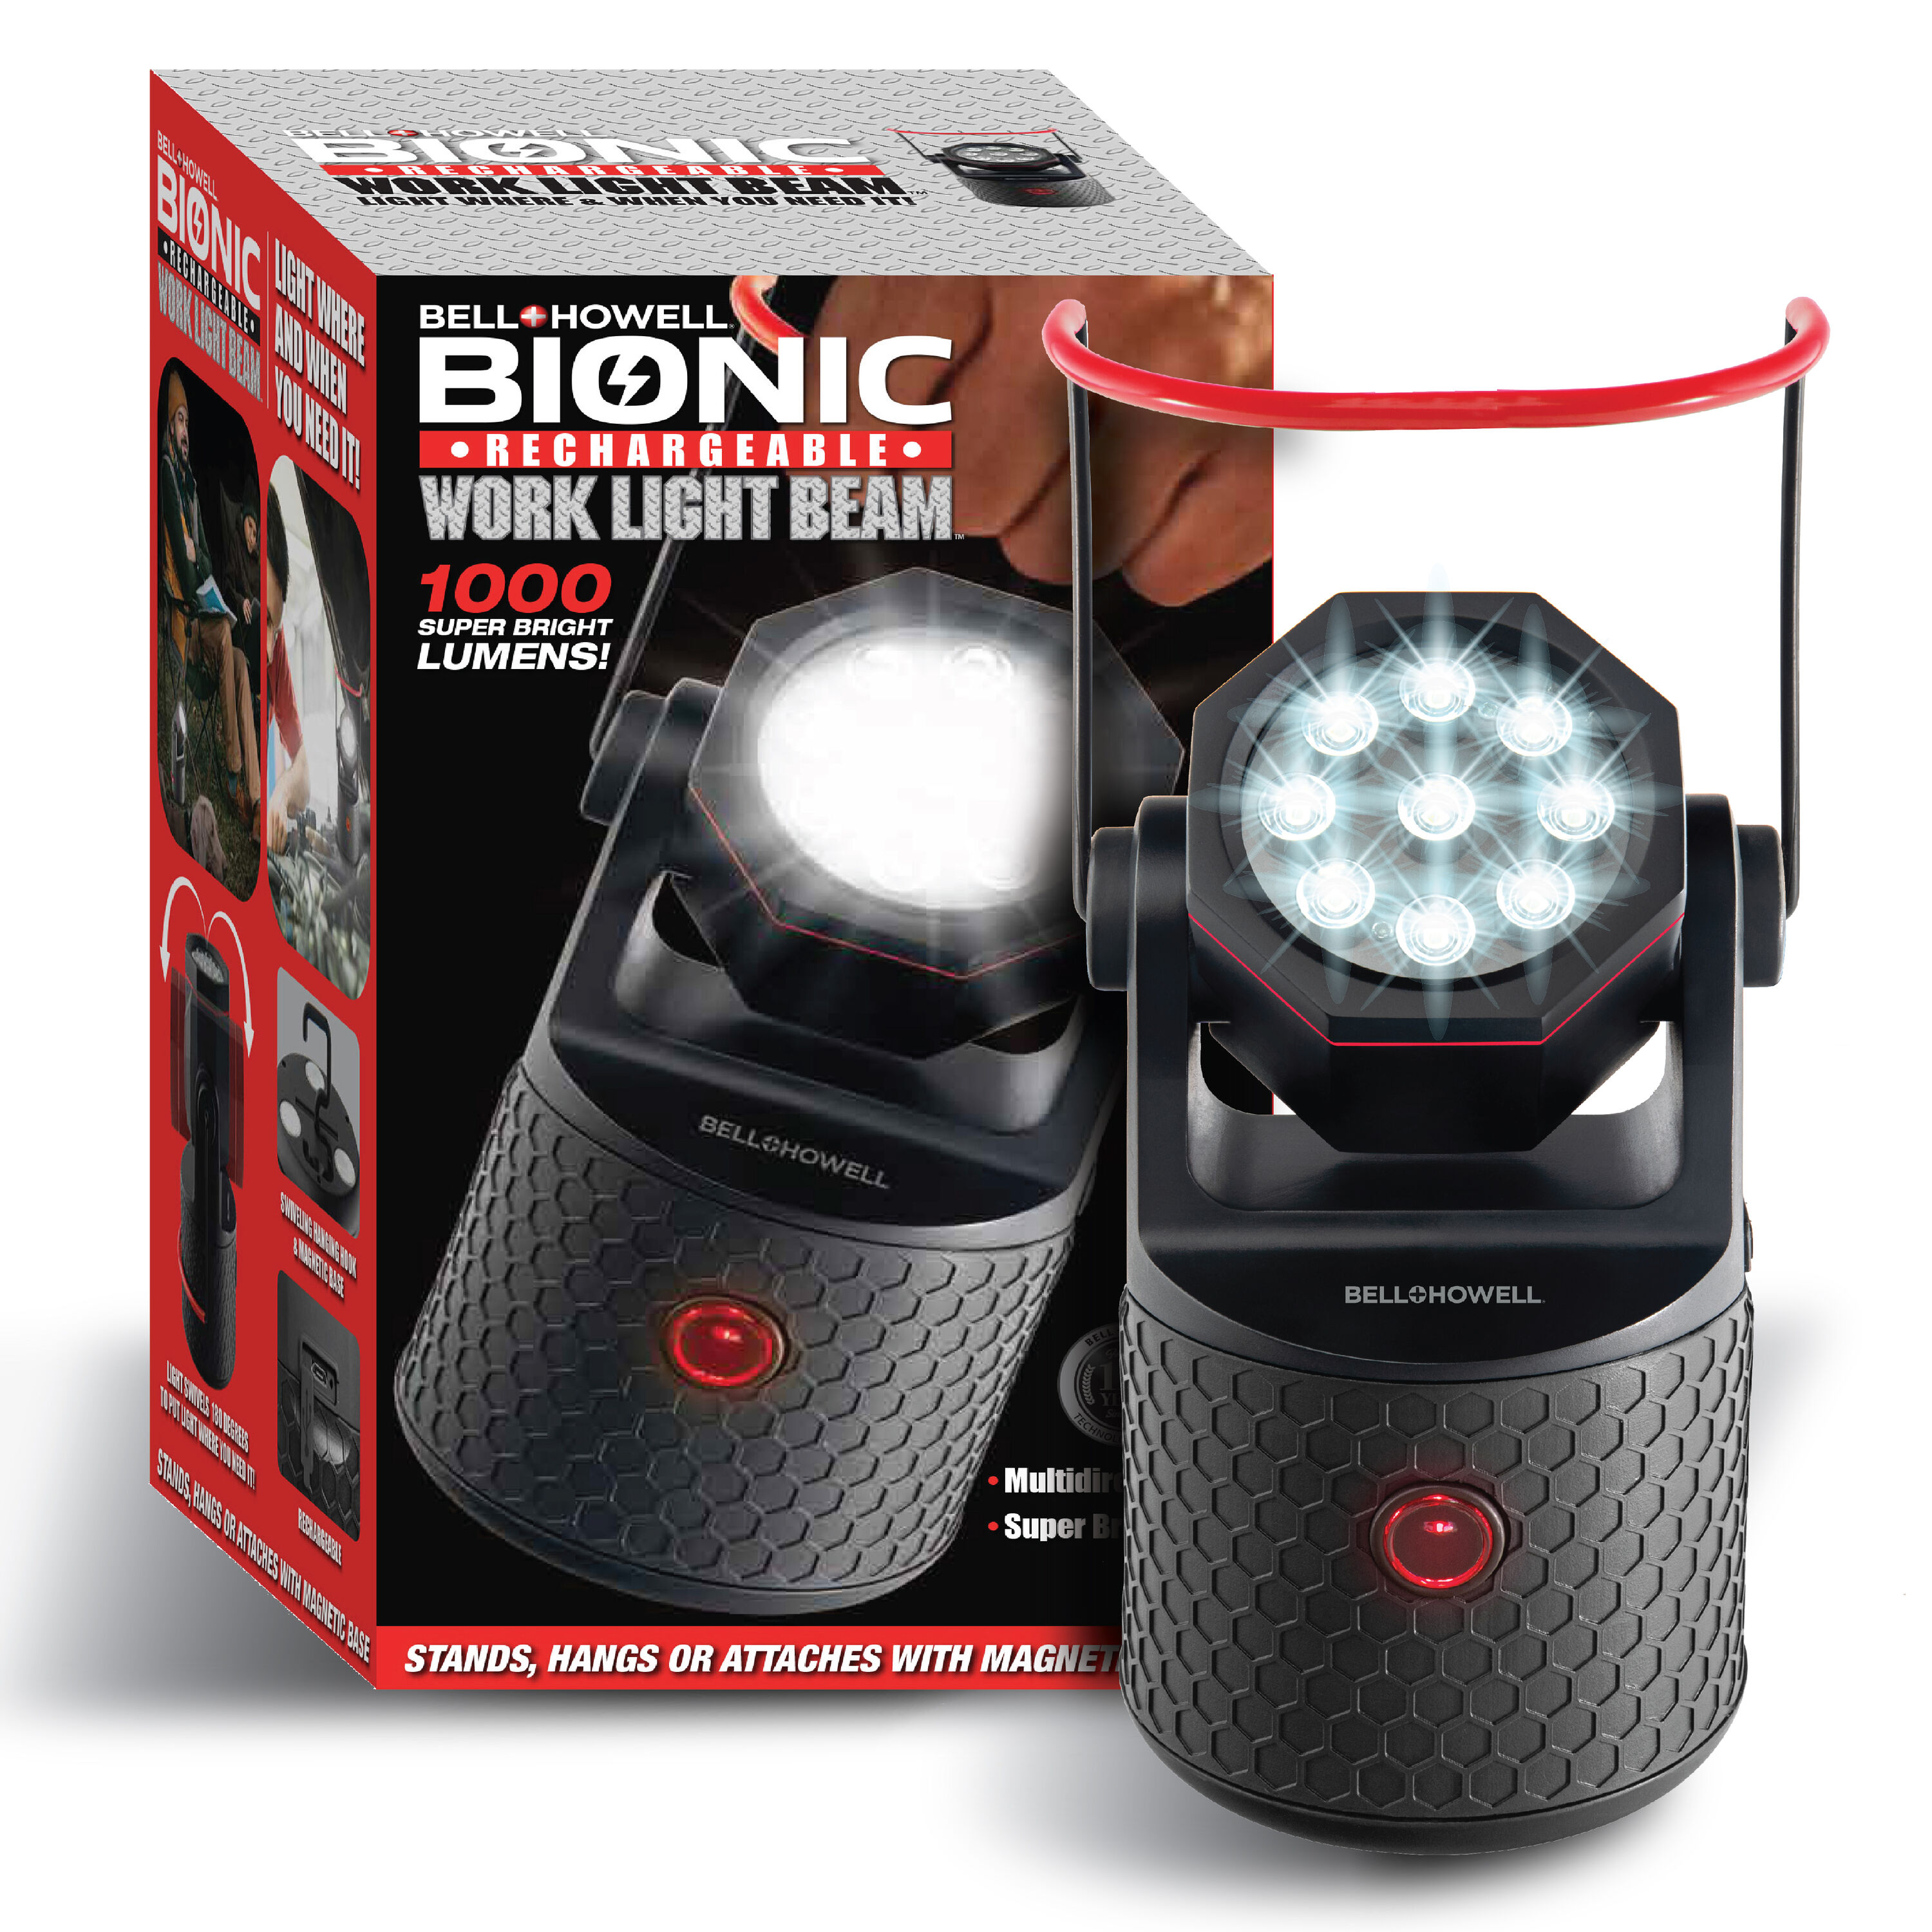 Bell+Howell - Lampe de sécurité Bionic. Colour: black, Fr